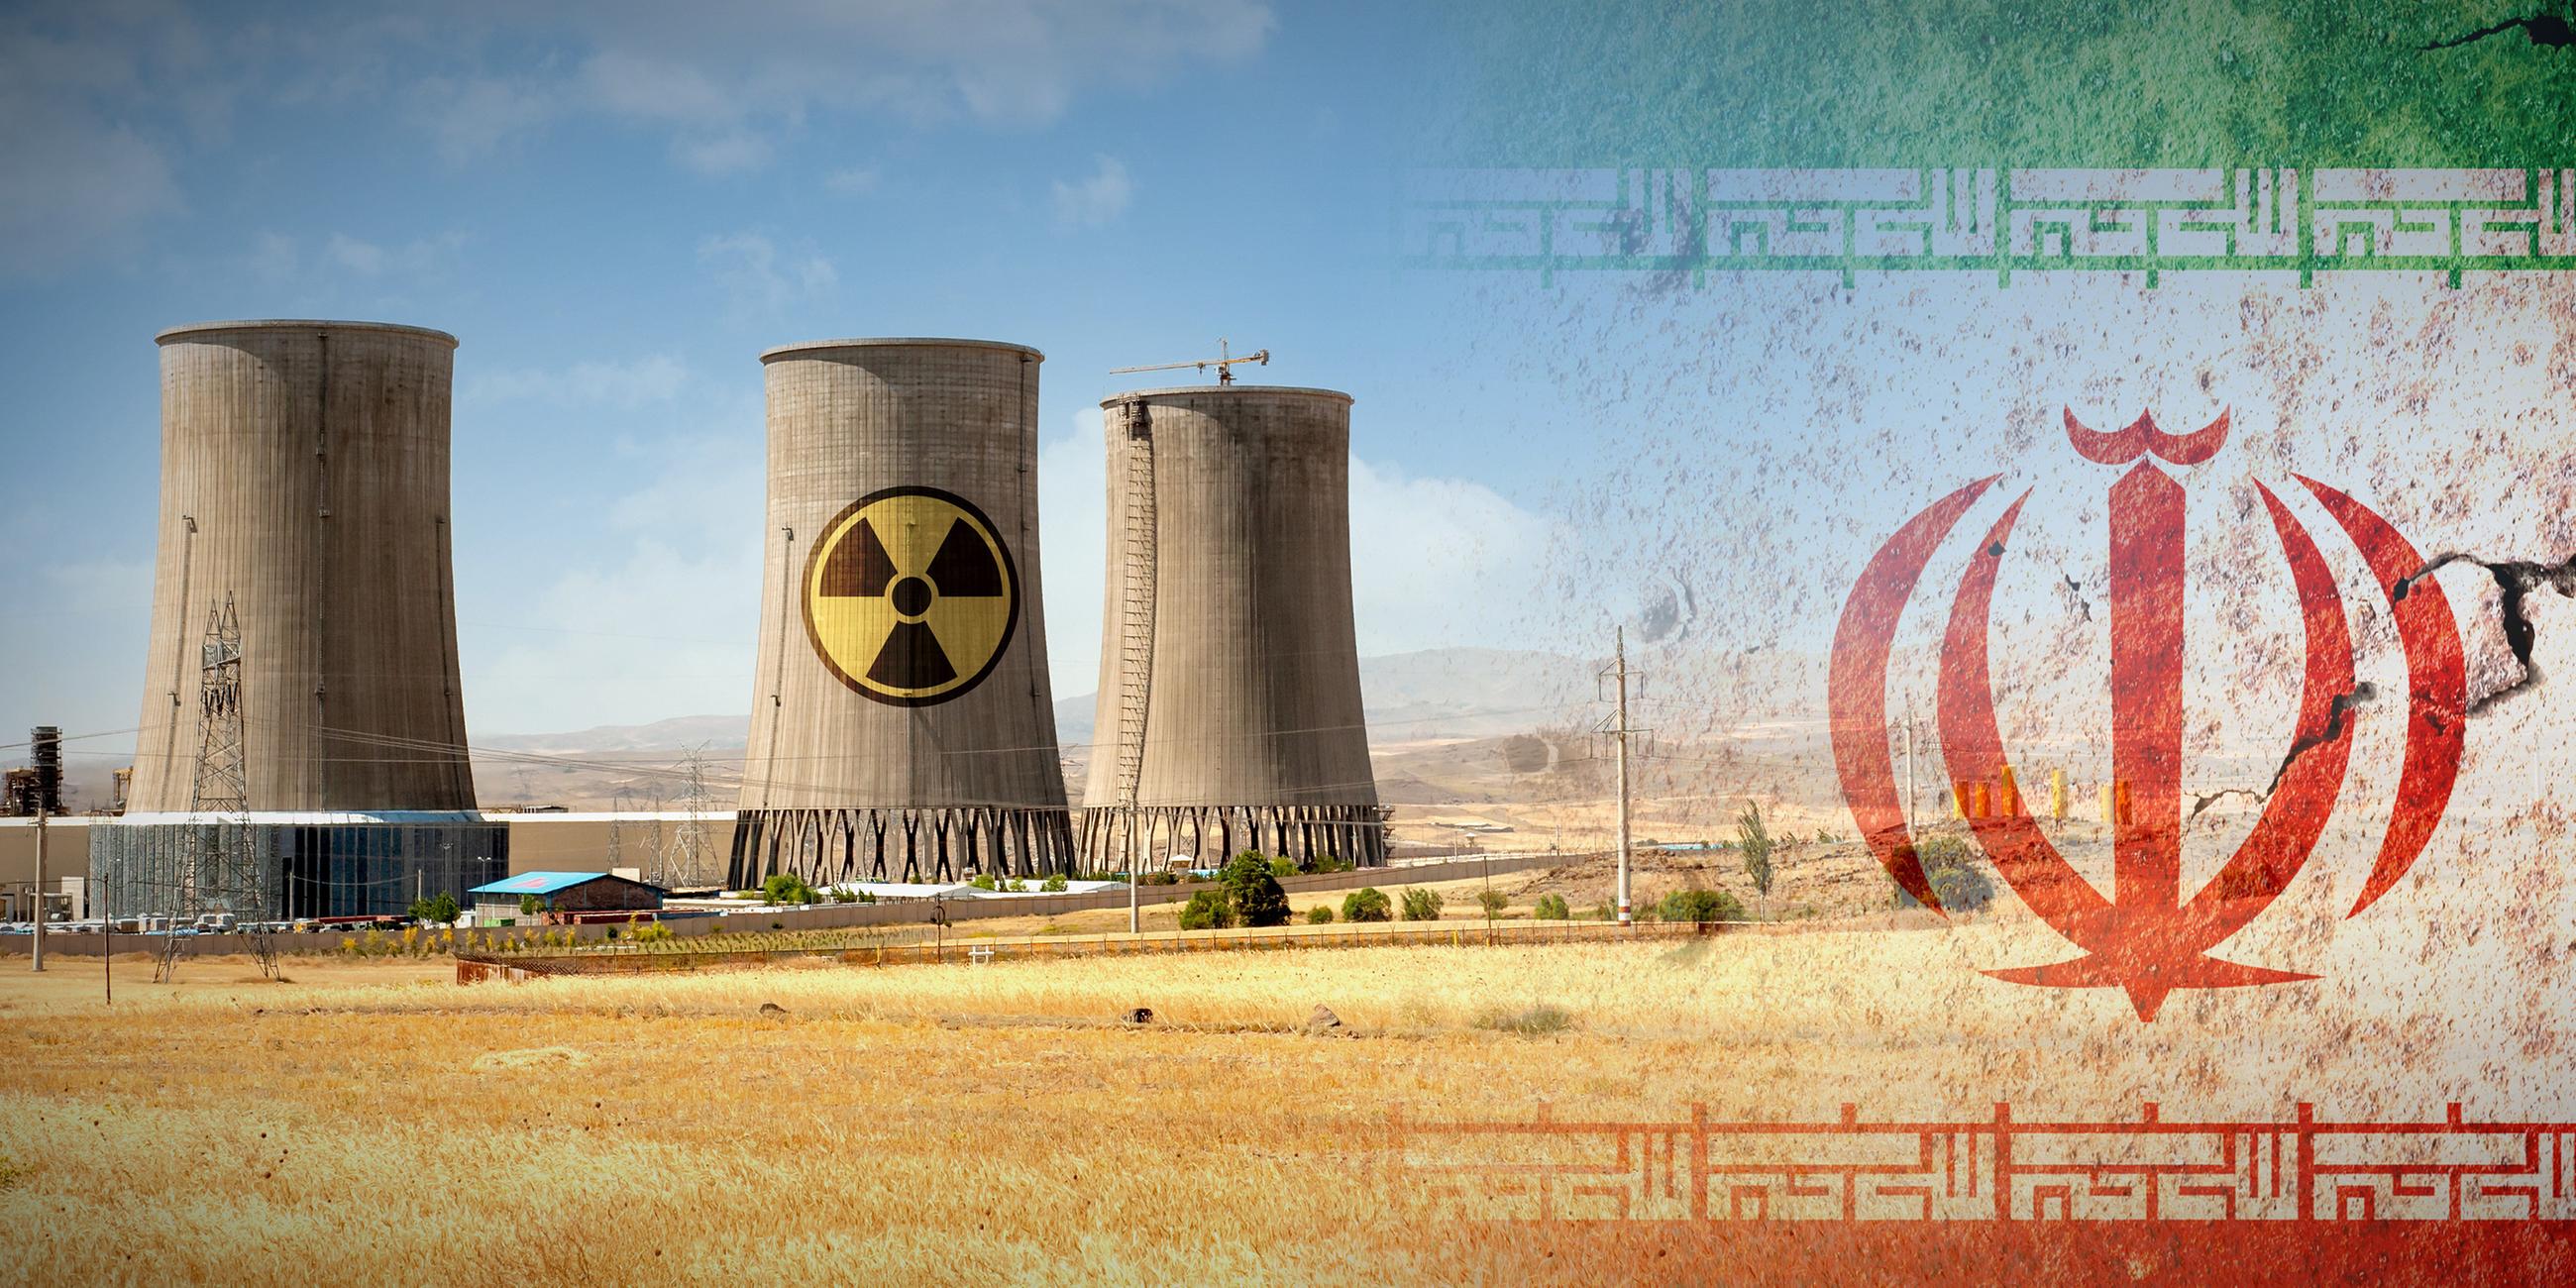 Montage: Rechts die Flagge des Iran, links ein Kraftwerk im Iran, darauf das Zeichen für Atomkraft/Radioaktivität.